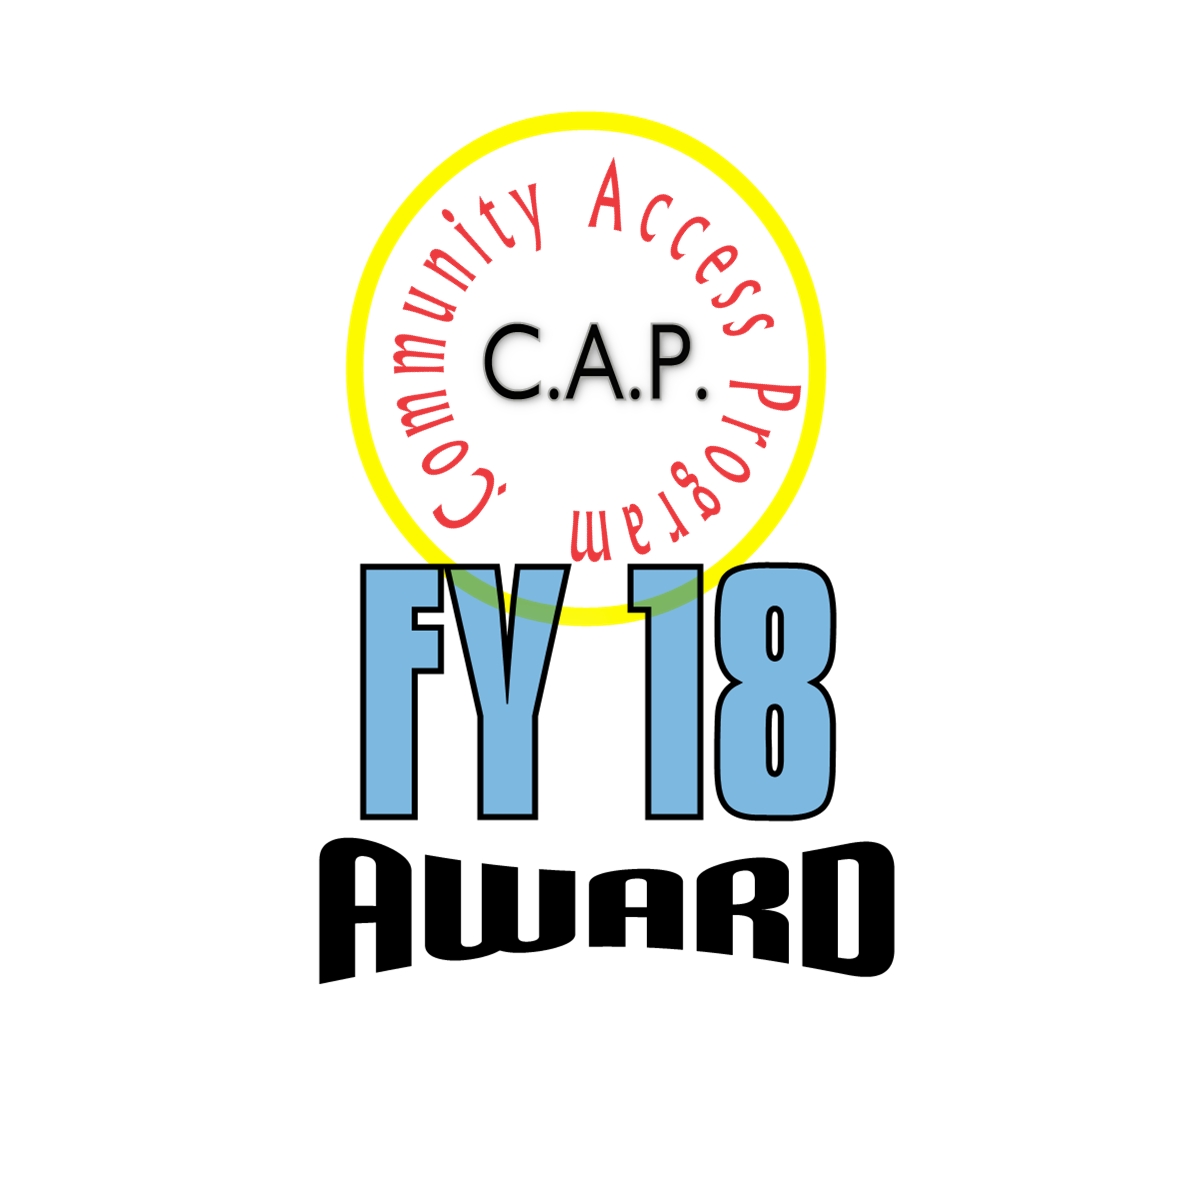 CAP (FY18) award logo.jpg